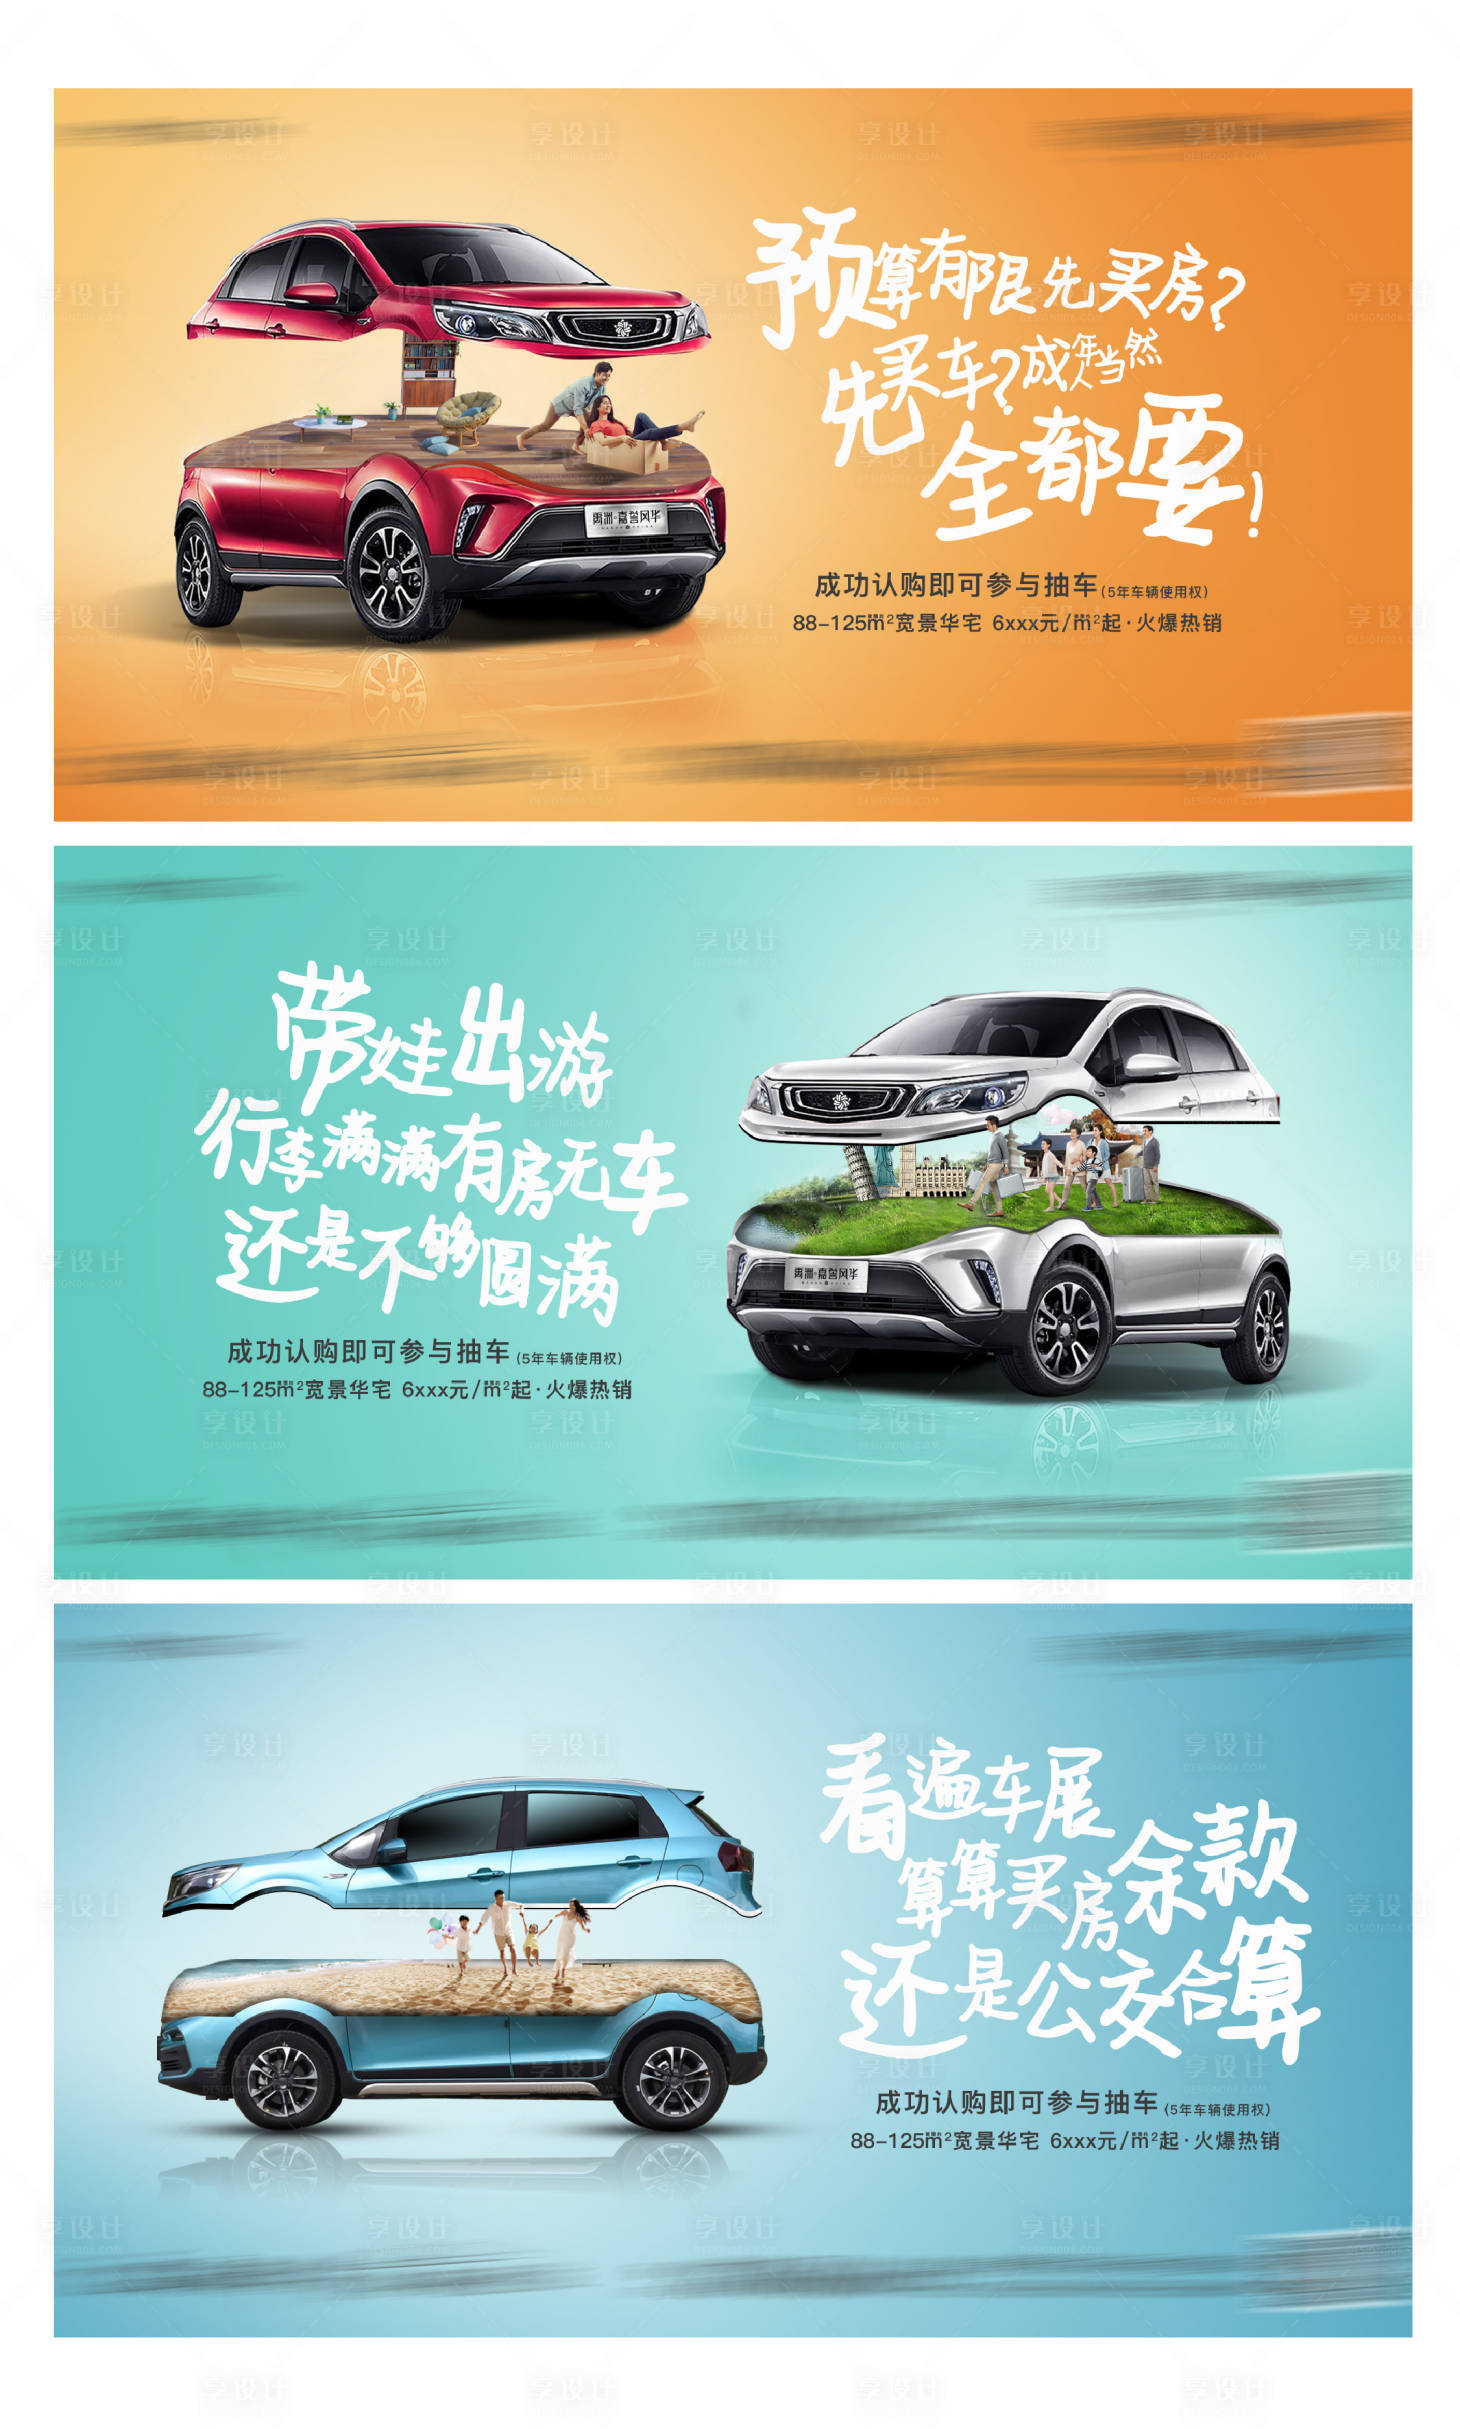 三菱L200汽车PS创意合成广告设计欣赏 - - 大美工dameigong.cn